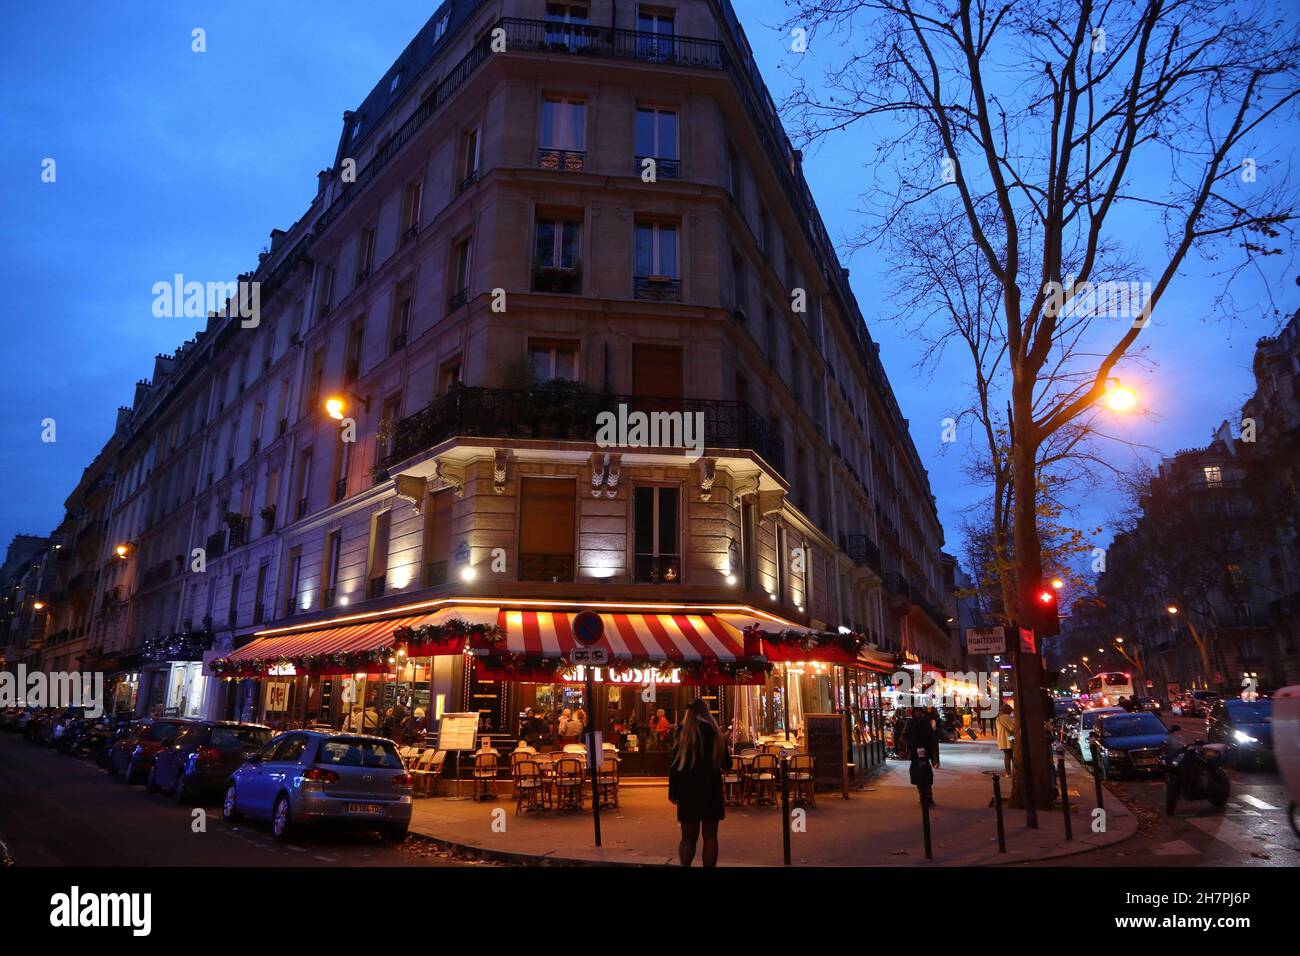 PARIGI, FRANCIA - 10 DICEMBRE 2019: La gente visita locale bistrot nel settimo arrondissement di Parigi, Francia. Parigi è la città più grande della Francia, con 12.5 km Foto Stock